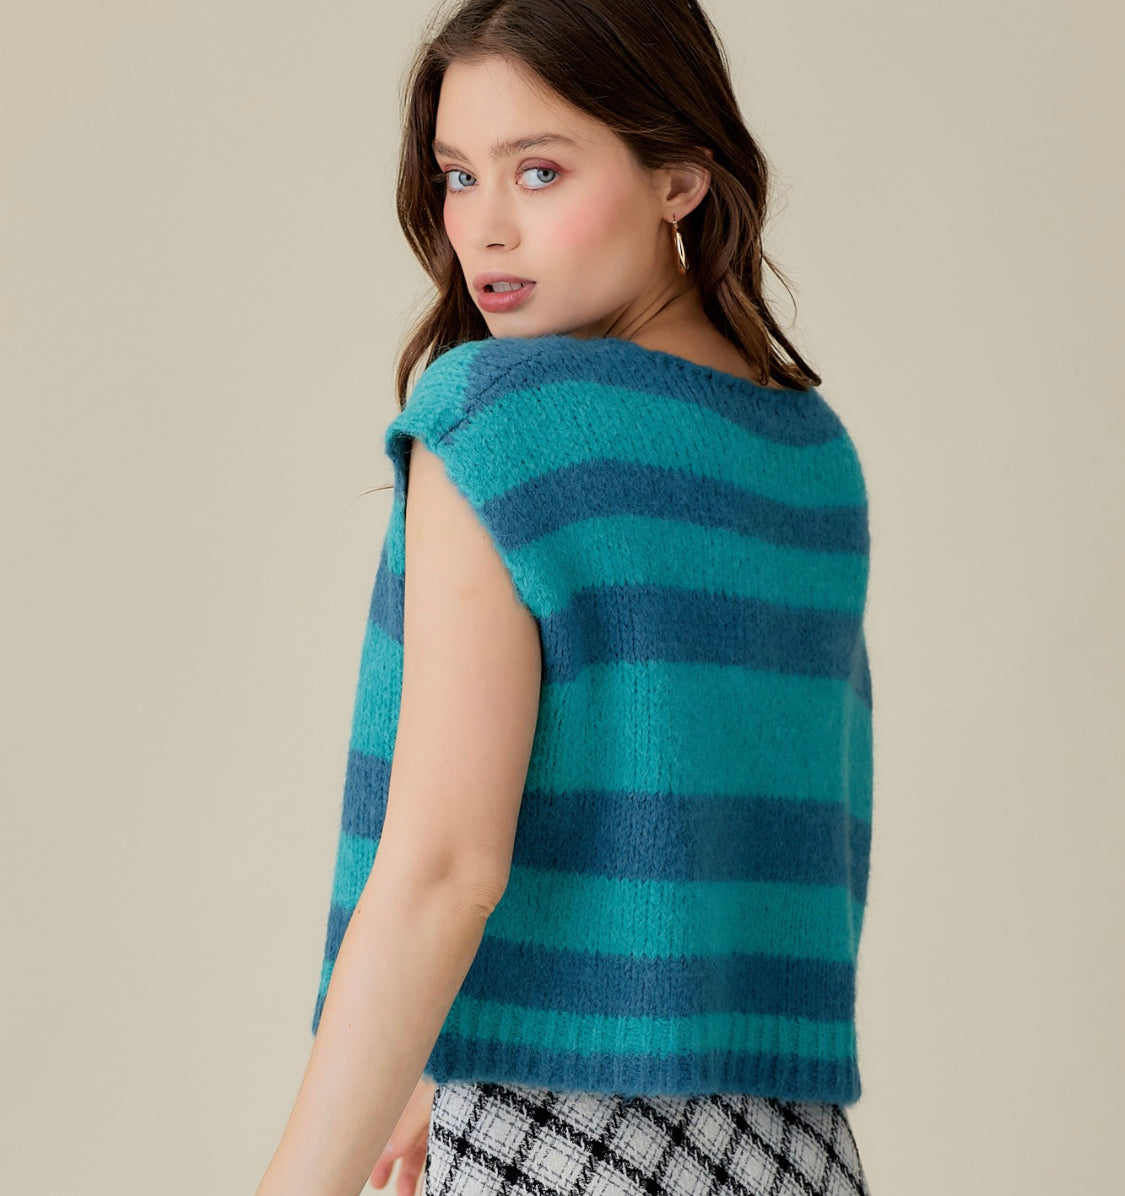 The Sofia Sweater